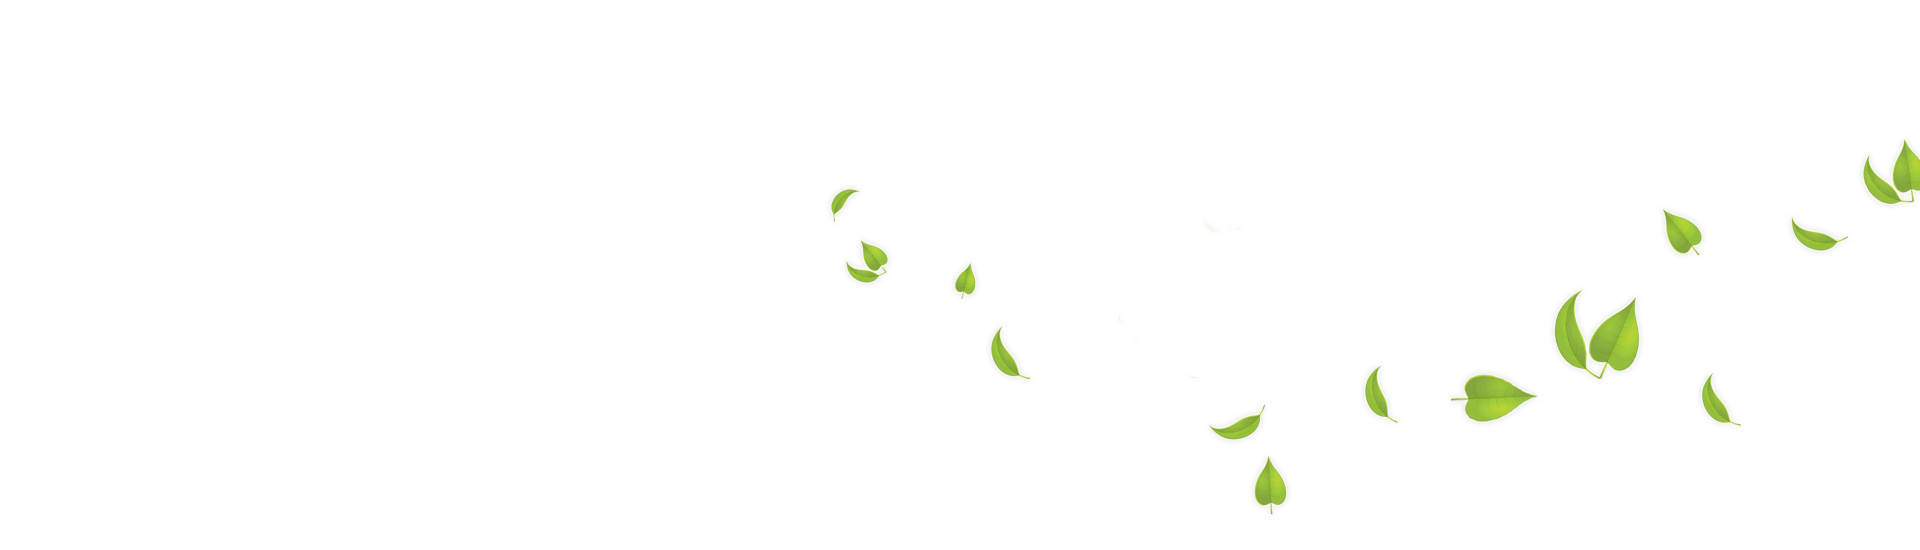 Download Green Leaves Transparent Background HQ PNG Image | FreePNGImg